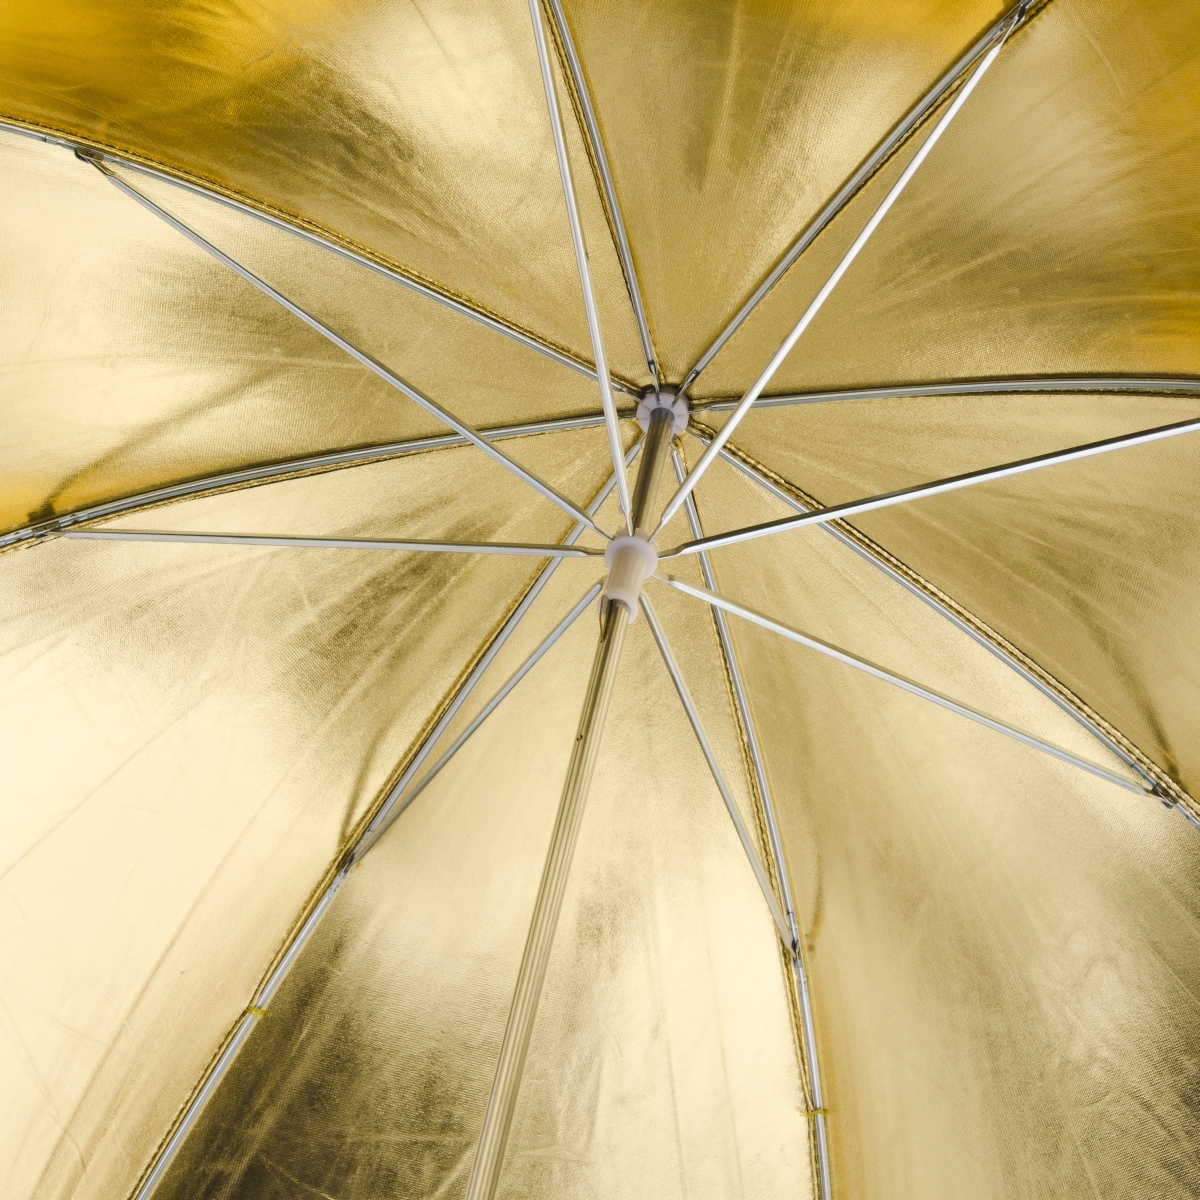 Walimex Reflex Umbrella gold, 84cm